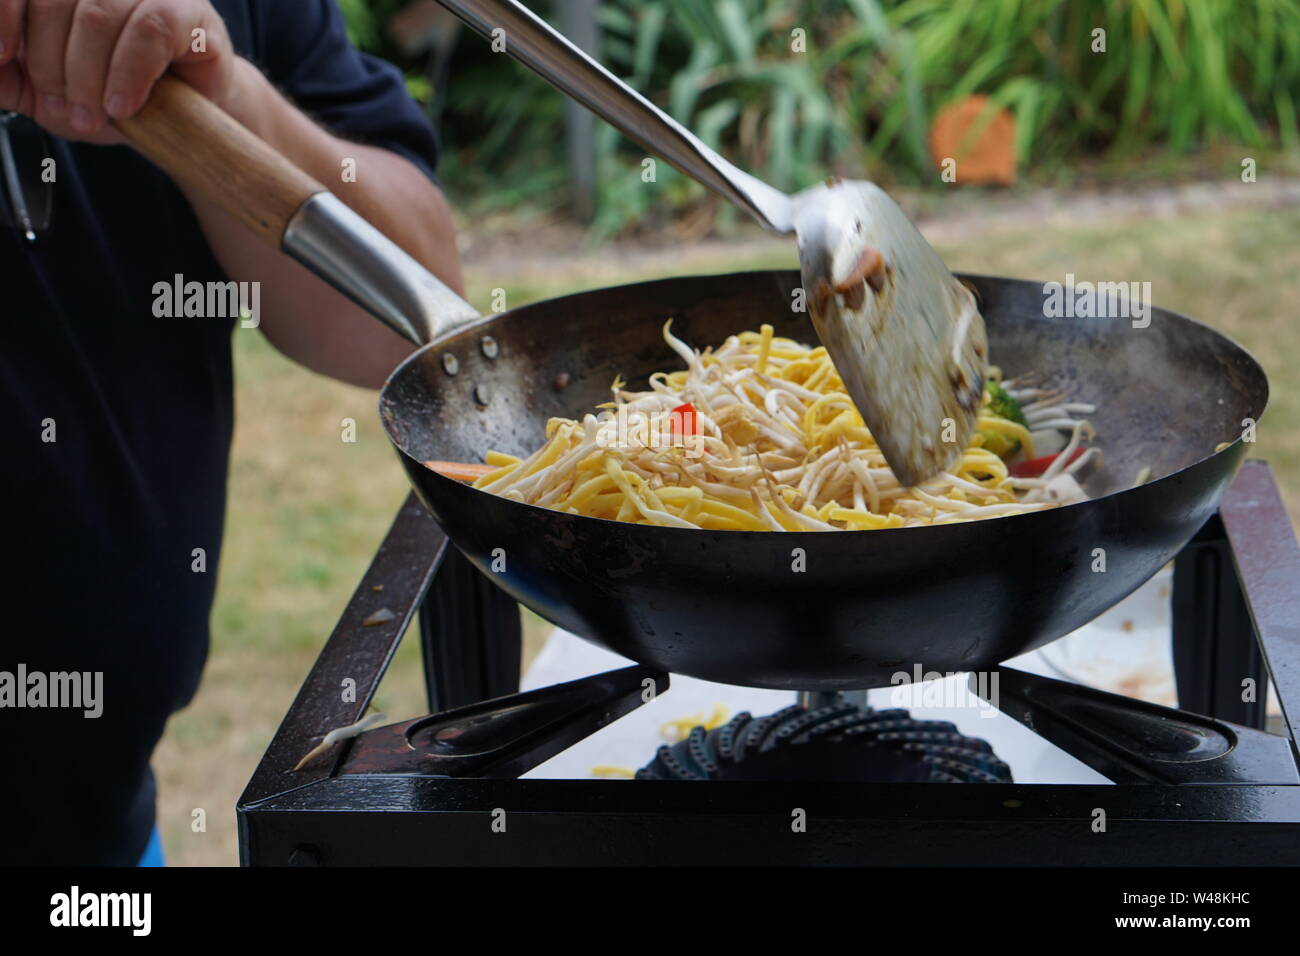 La cuisine asiatique dans un wok casserole Banque D'Images